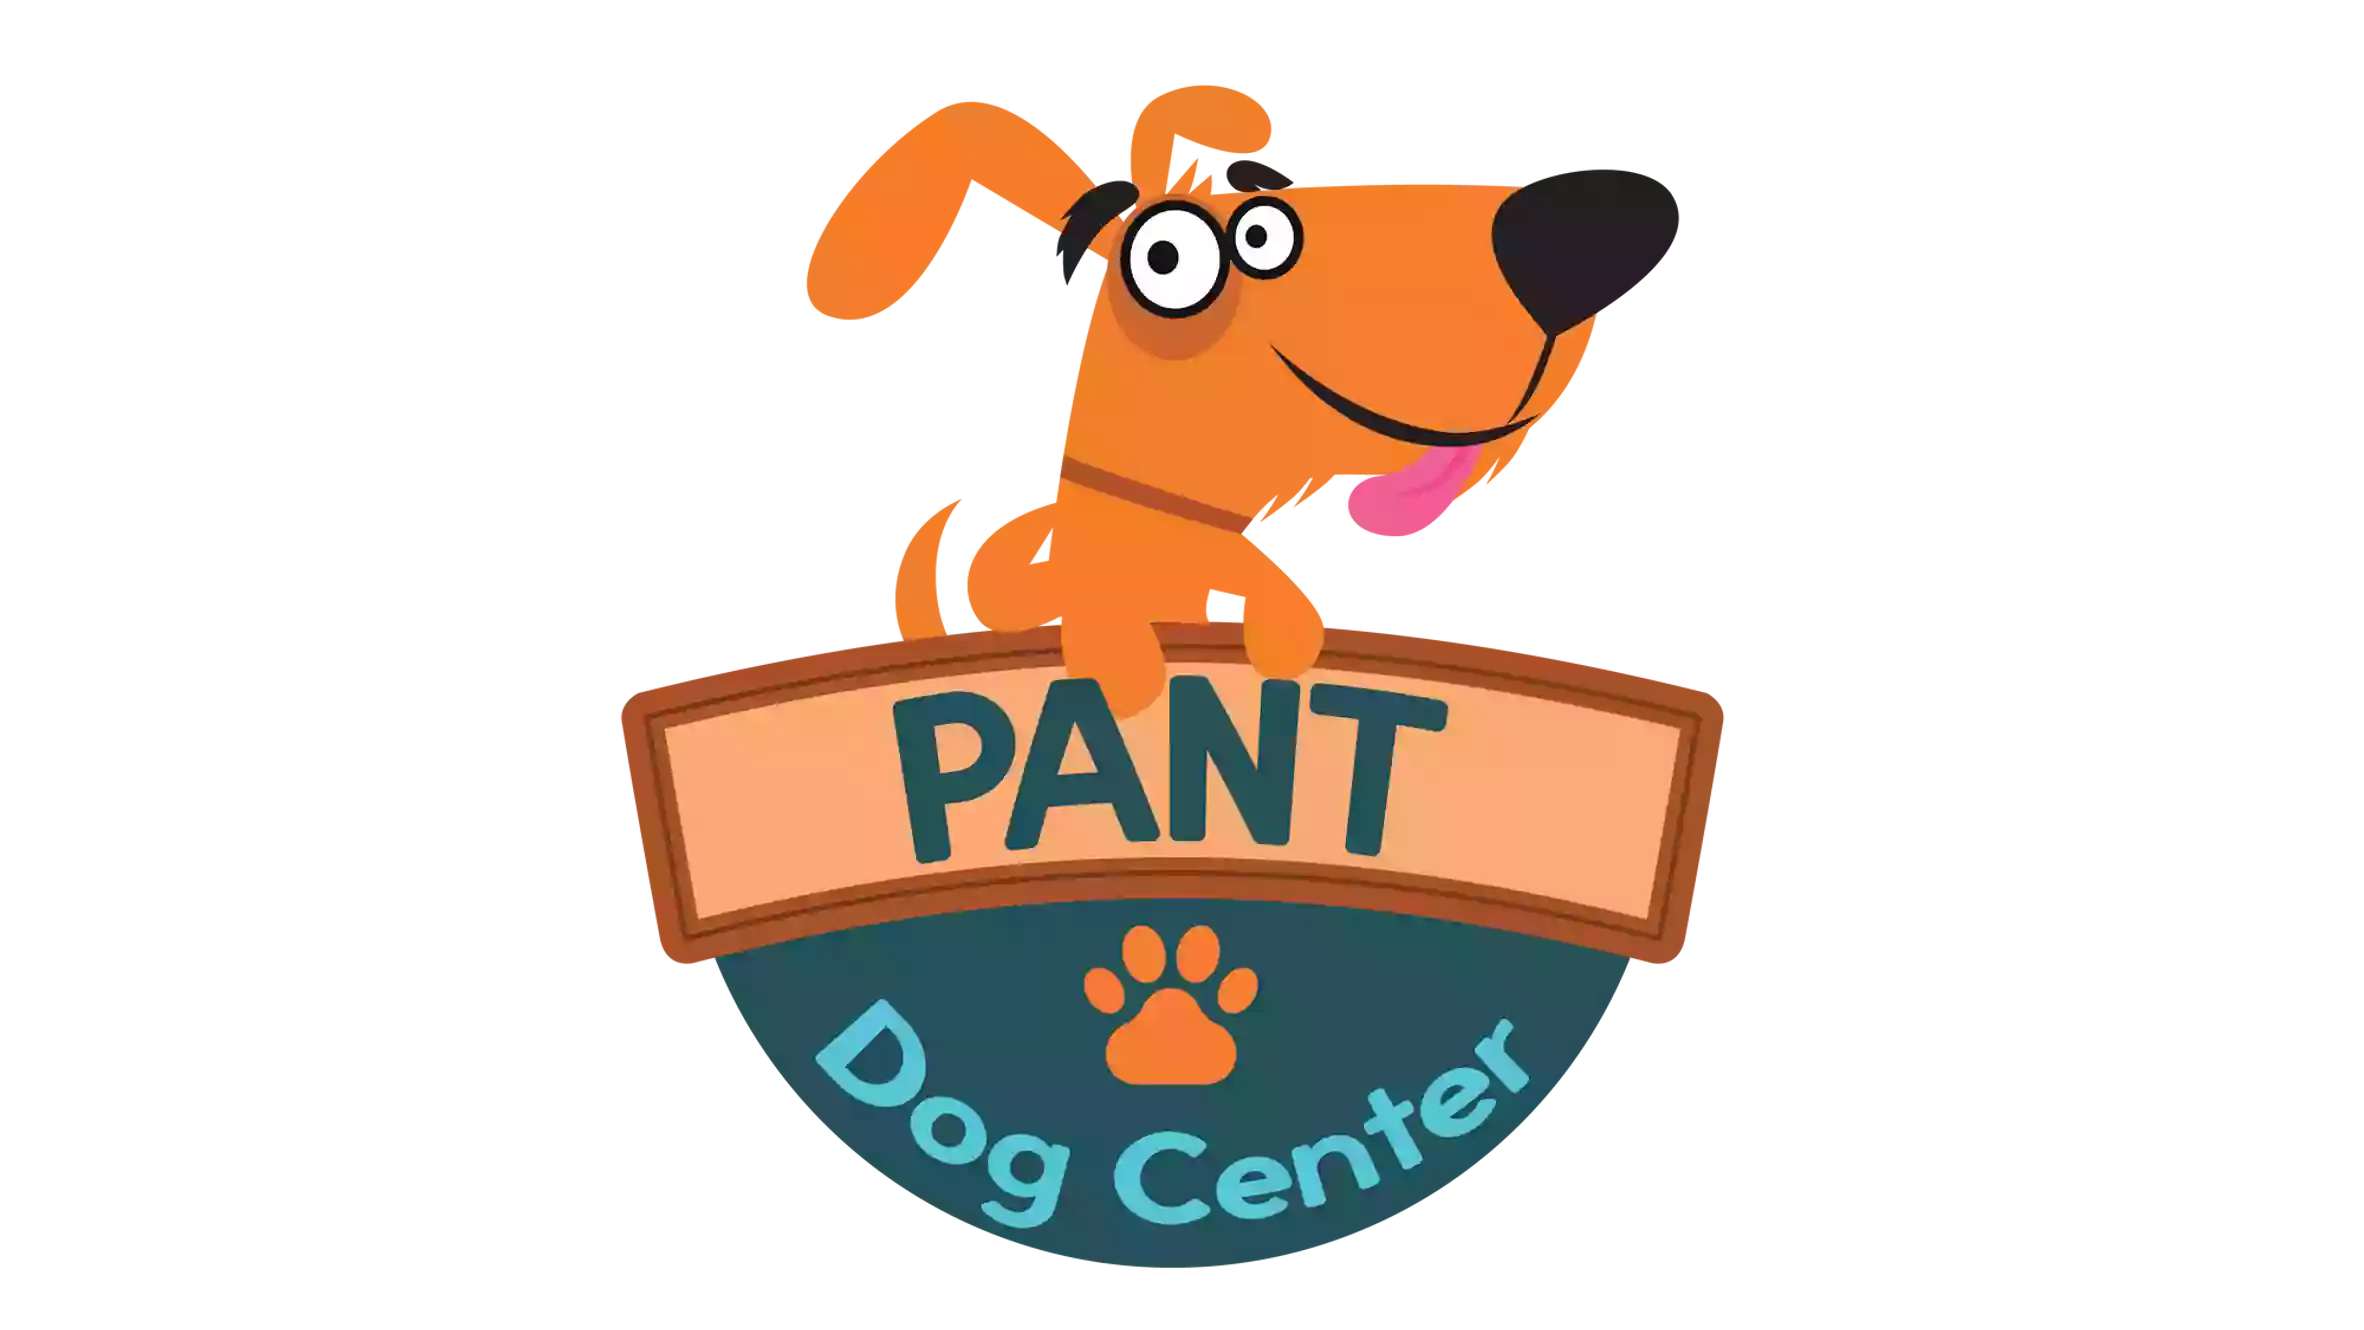 Pant Dog Center